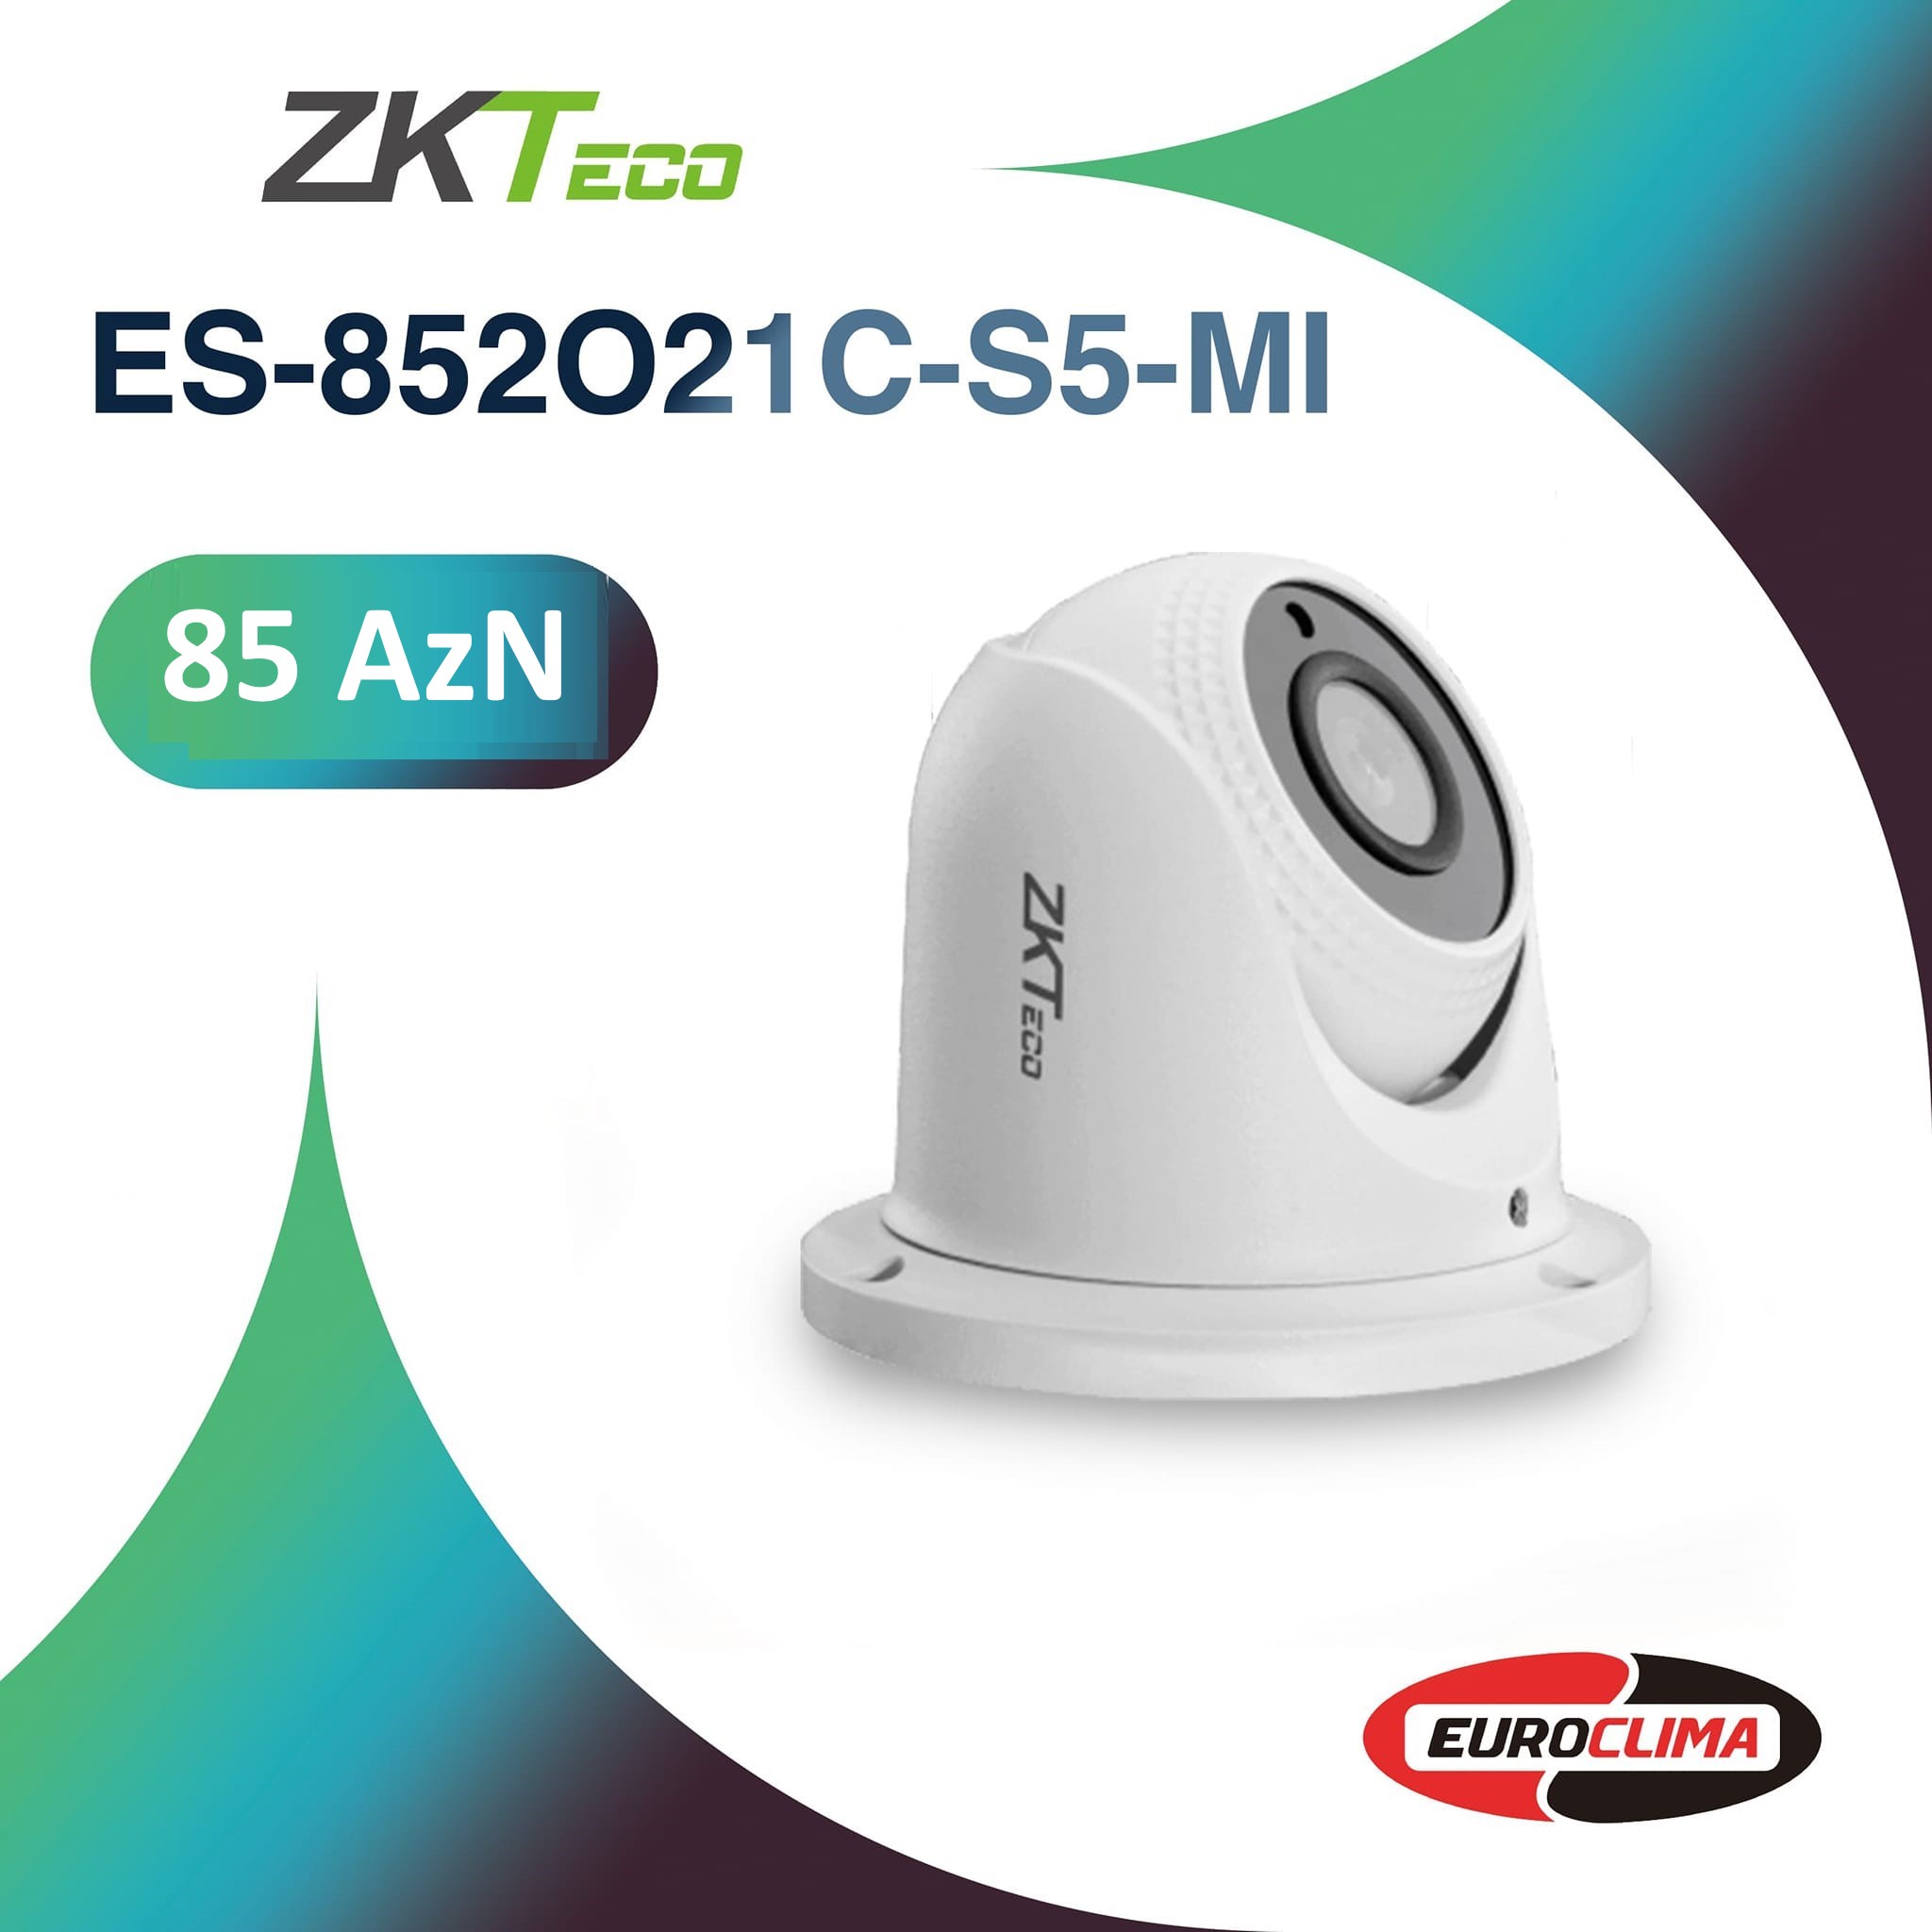 ZKTeco Model "ES-852O21C-S5-MI" ! Model "ES-852012C-S5-C" !